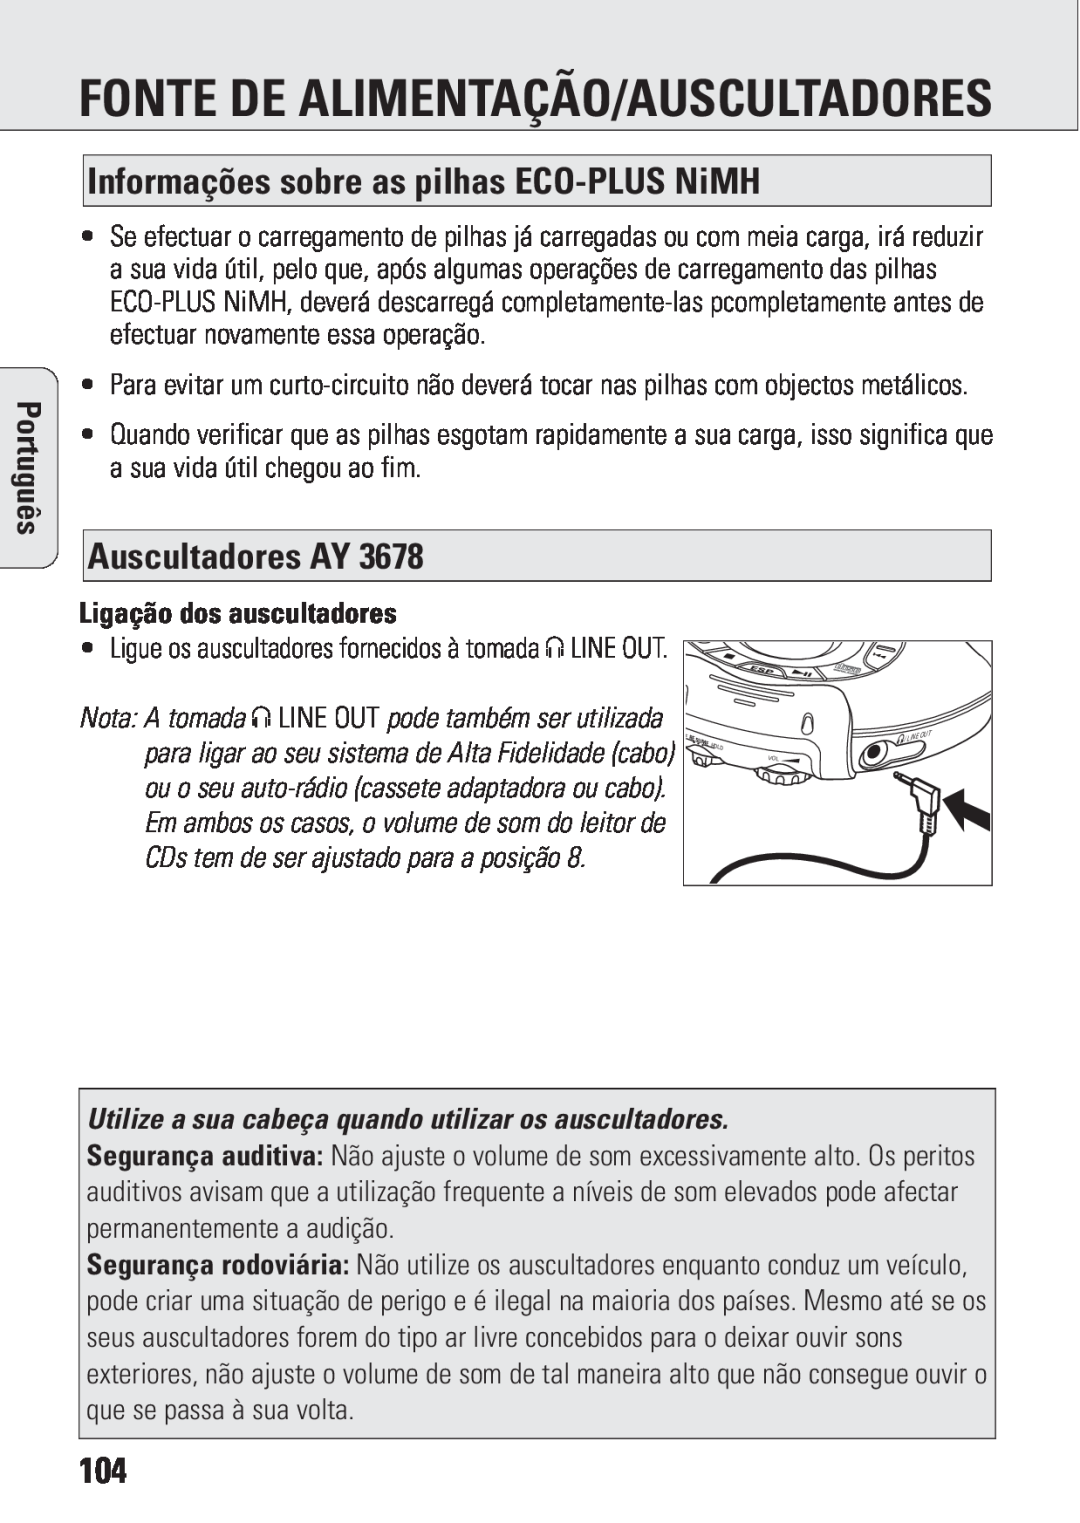 Philips ACT 7583 Fonte De Alimentação/Auscultadores, Informações sobre as pilhas ECO-PLUSNiMH, Auscultadores AY, Português 